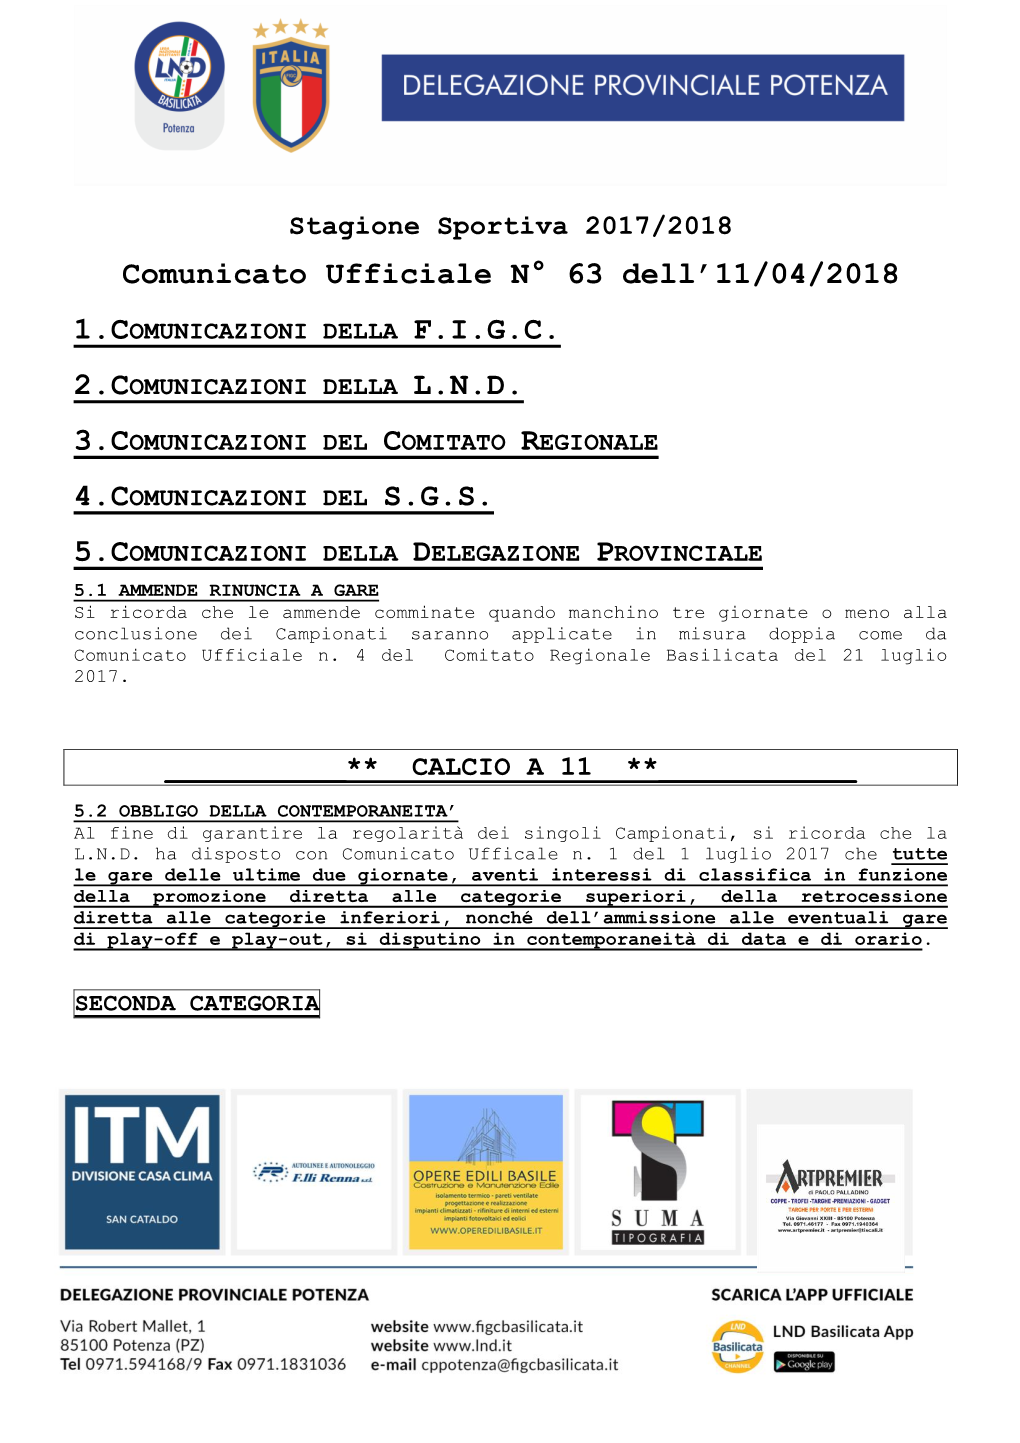 Comunicato Ufficiale N° 63 Dell'11/04/2018